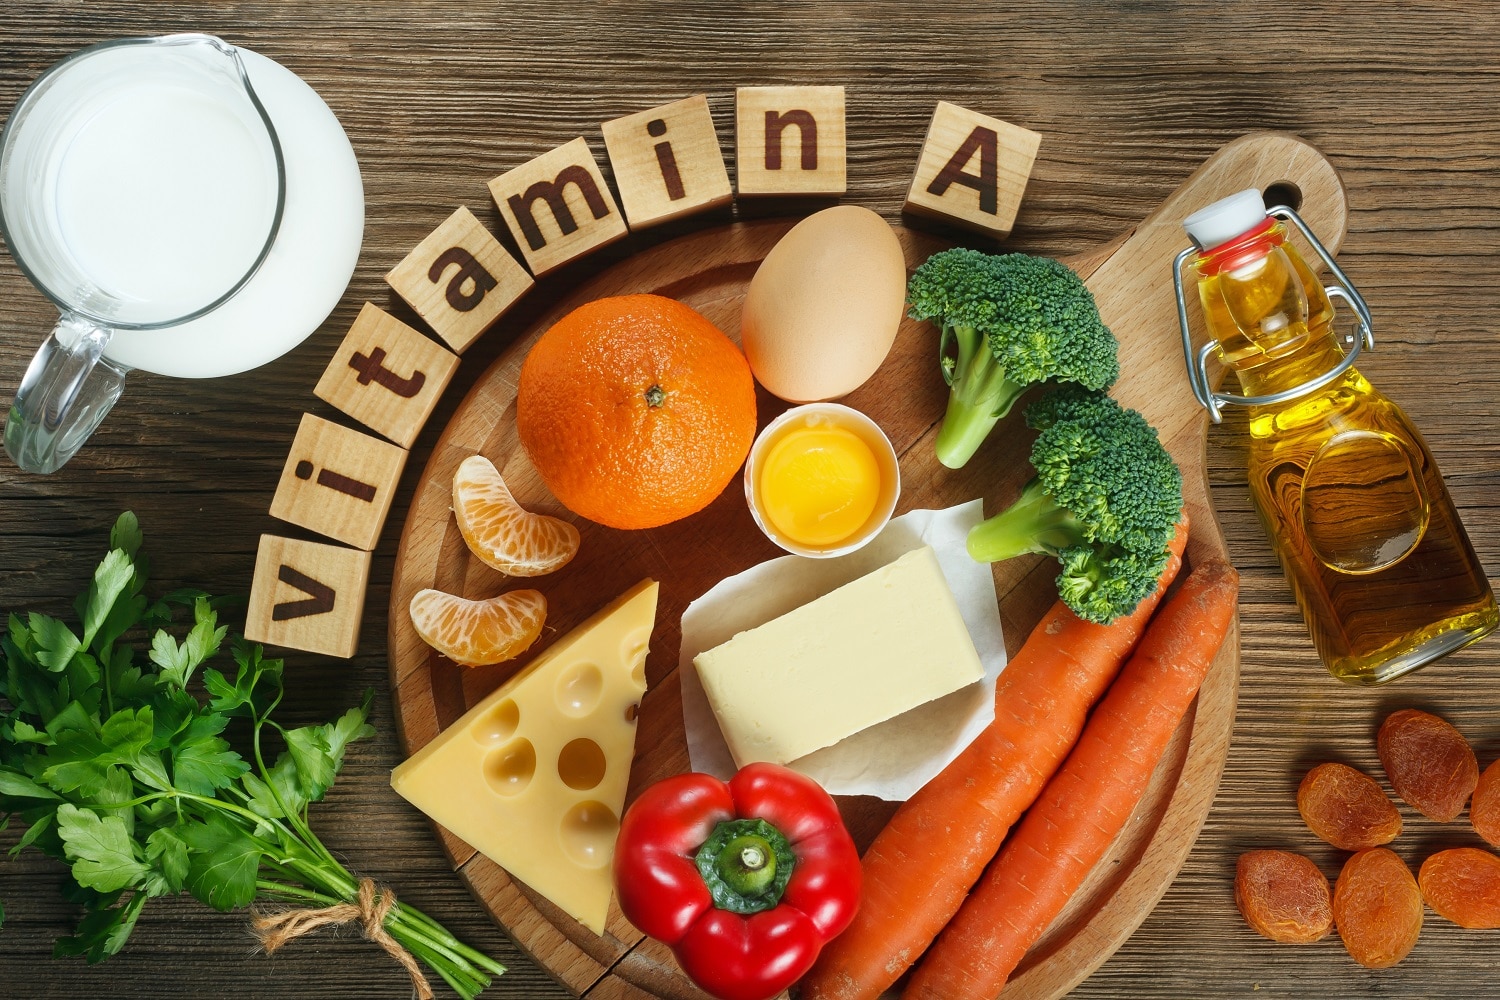 Aliments assortis riches en vitamine A sur une table en bois pour prévenir une carence en vitamine A.